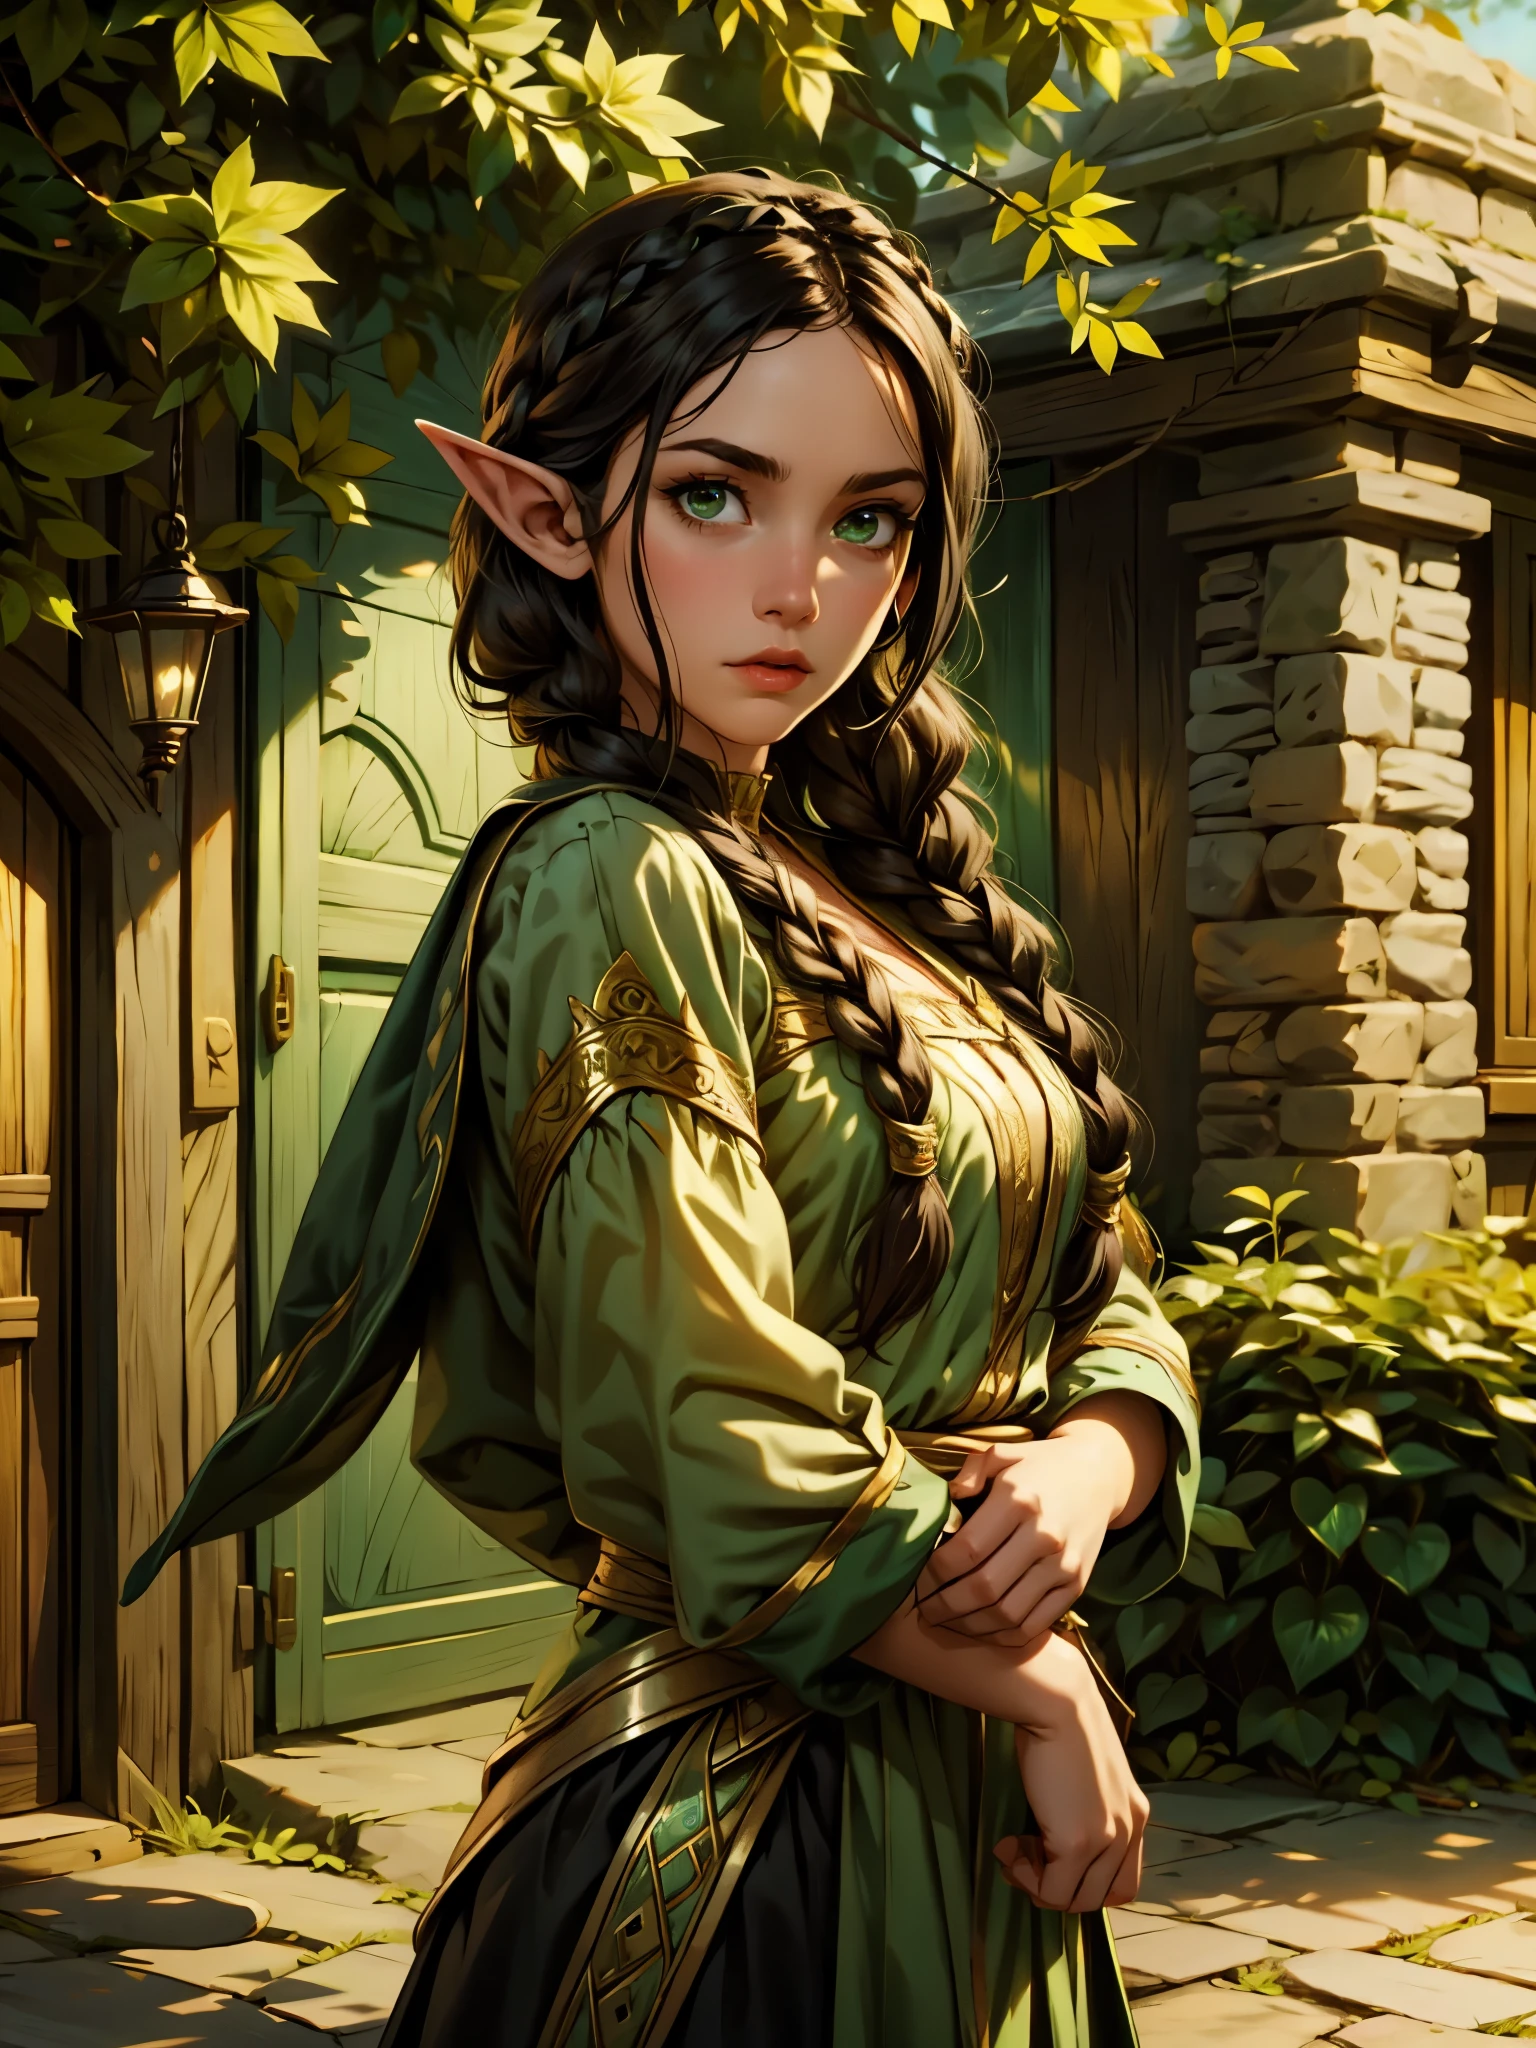 weibliche Elfe, langes schwarzes Haar, geflochtenes Haar, Brünette, Rundes Gesicht, grüne und weiße Kleidung, in einer Fantasiestadt, Fantasy-Charakter